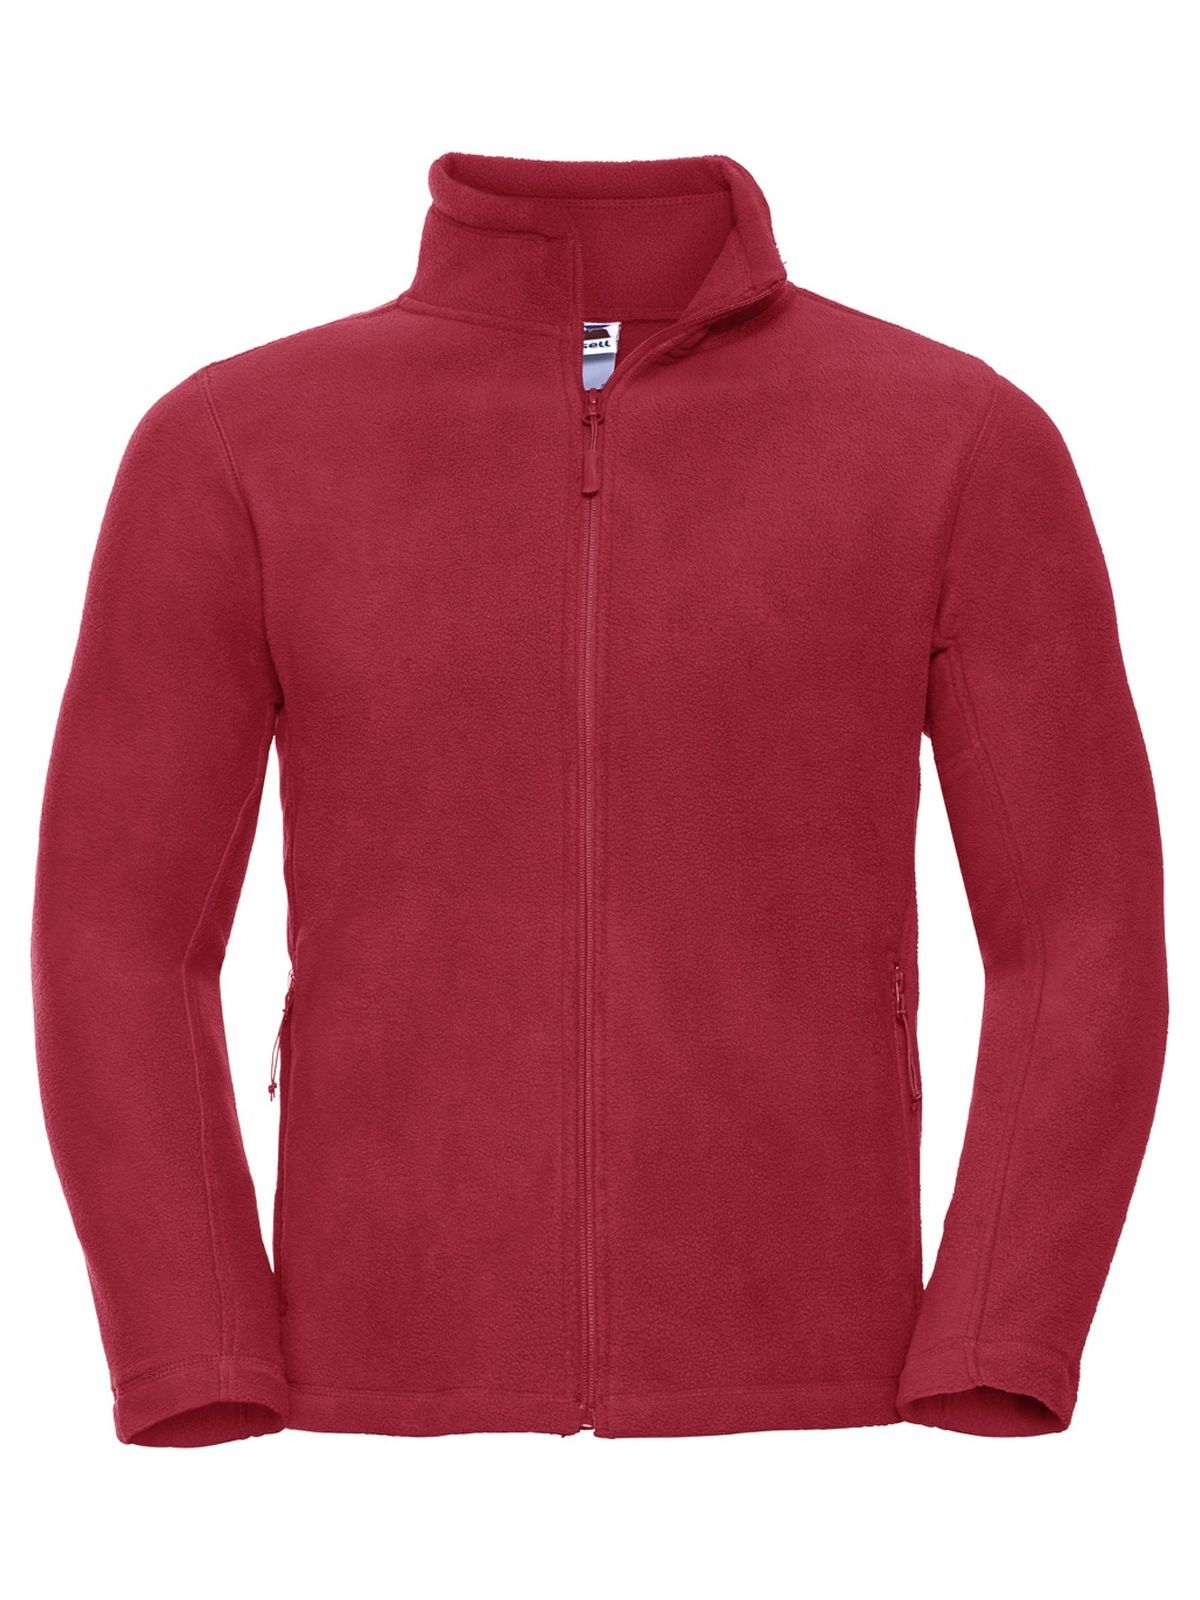 mens-full-zip-outdoor-fleece-classic-red.webp